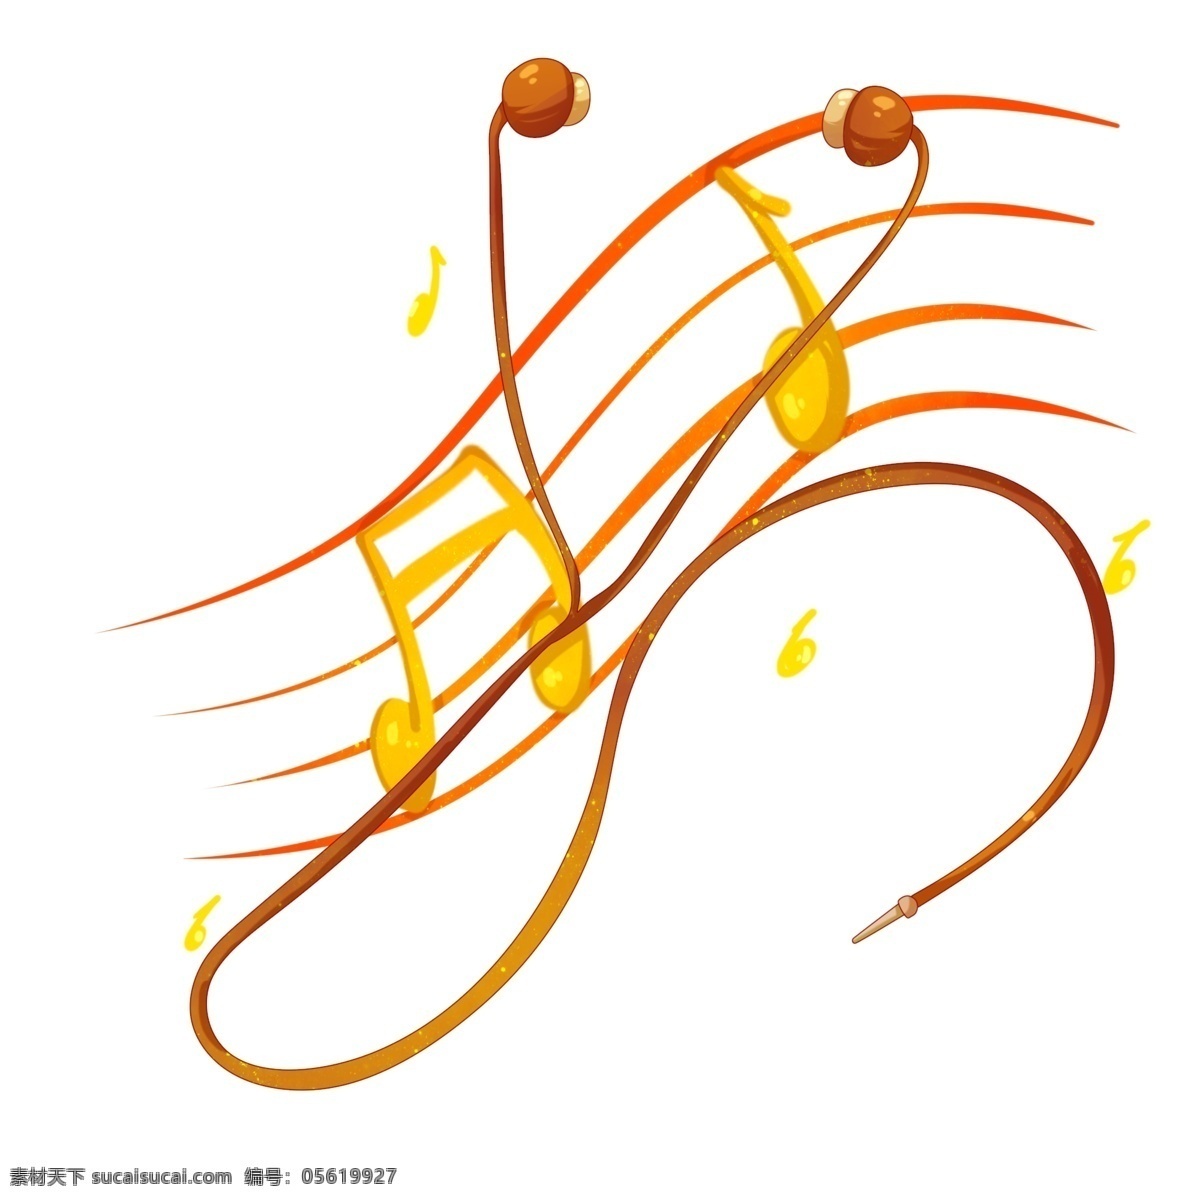 音乐 乐谱 卡通 插画 音乐的乐谱 卡通插画 音乐工具 音乐乐器 音乐用品 娱乐插画 唱歌的音乐